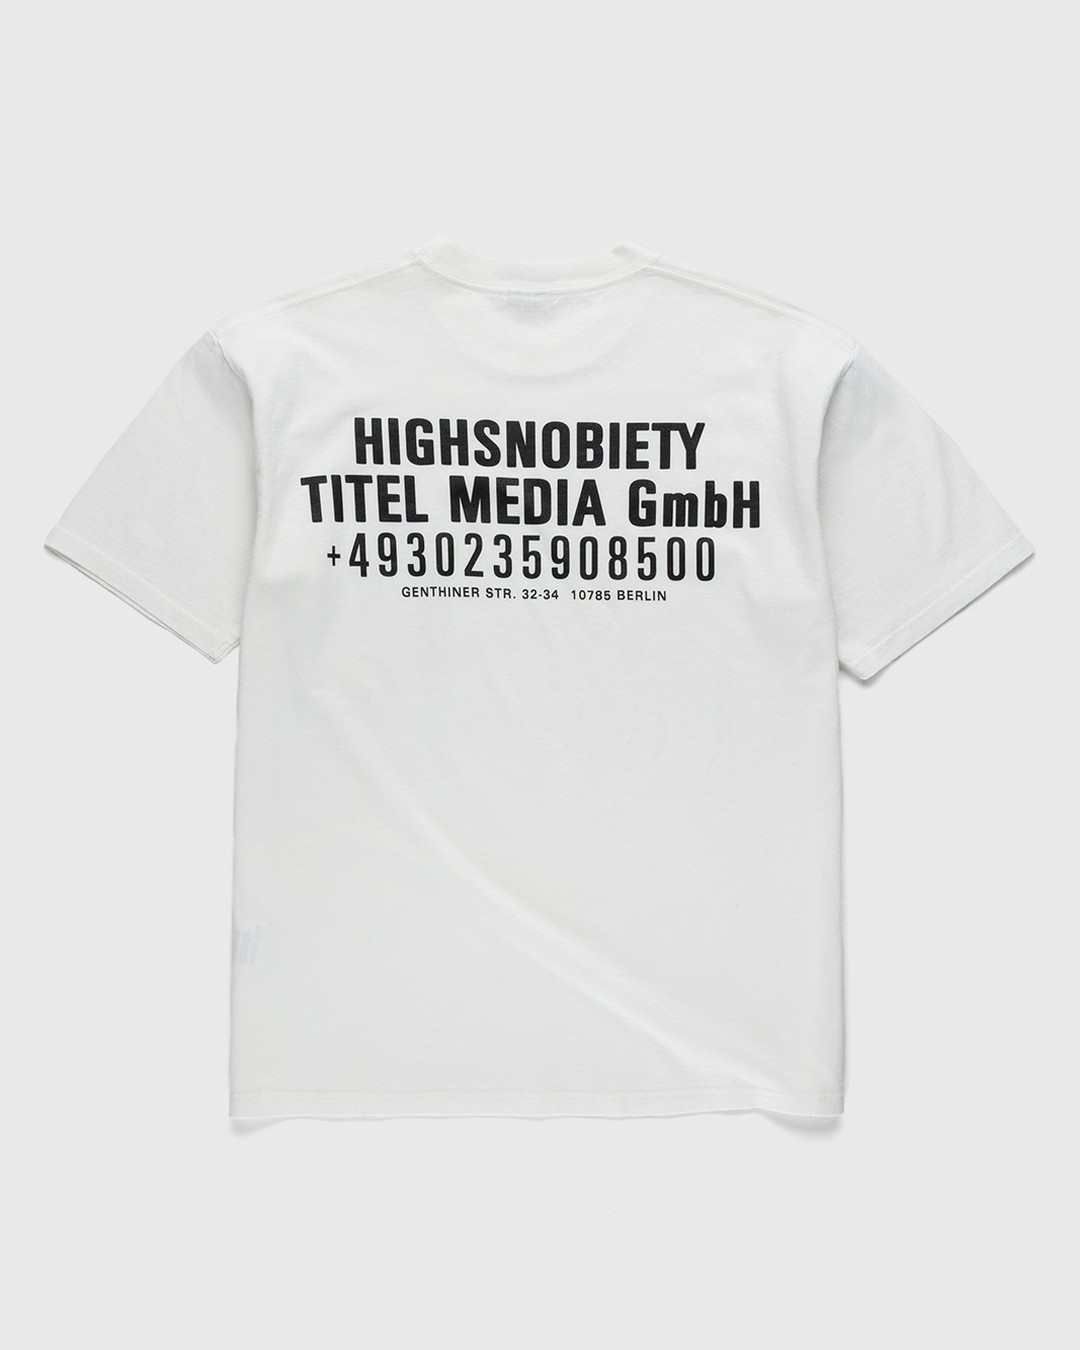 Highsnobiety – Titel Media GmbH T-Shirt White - T-shirts - White - Image 1